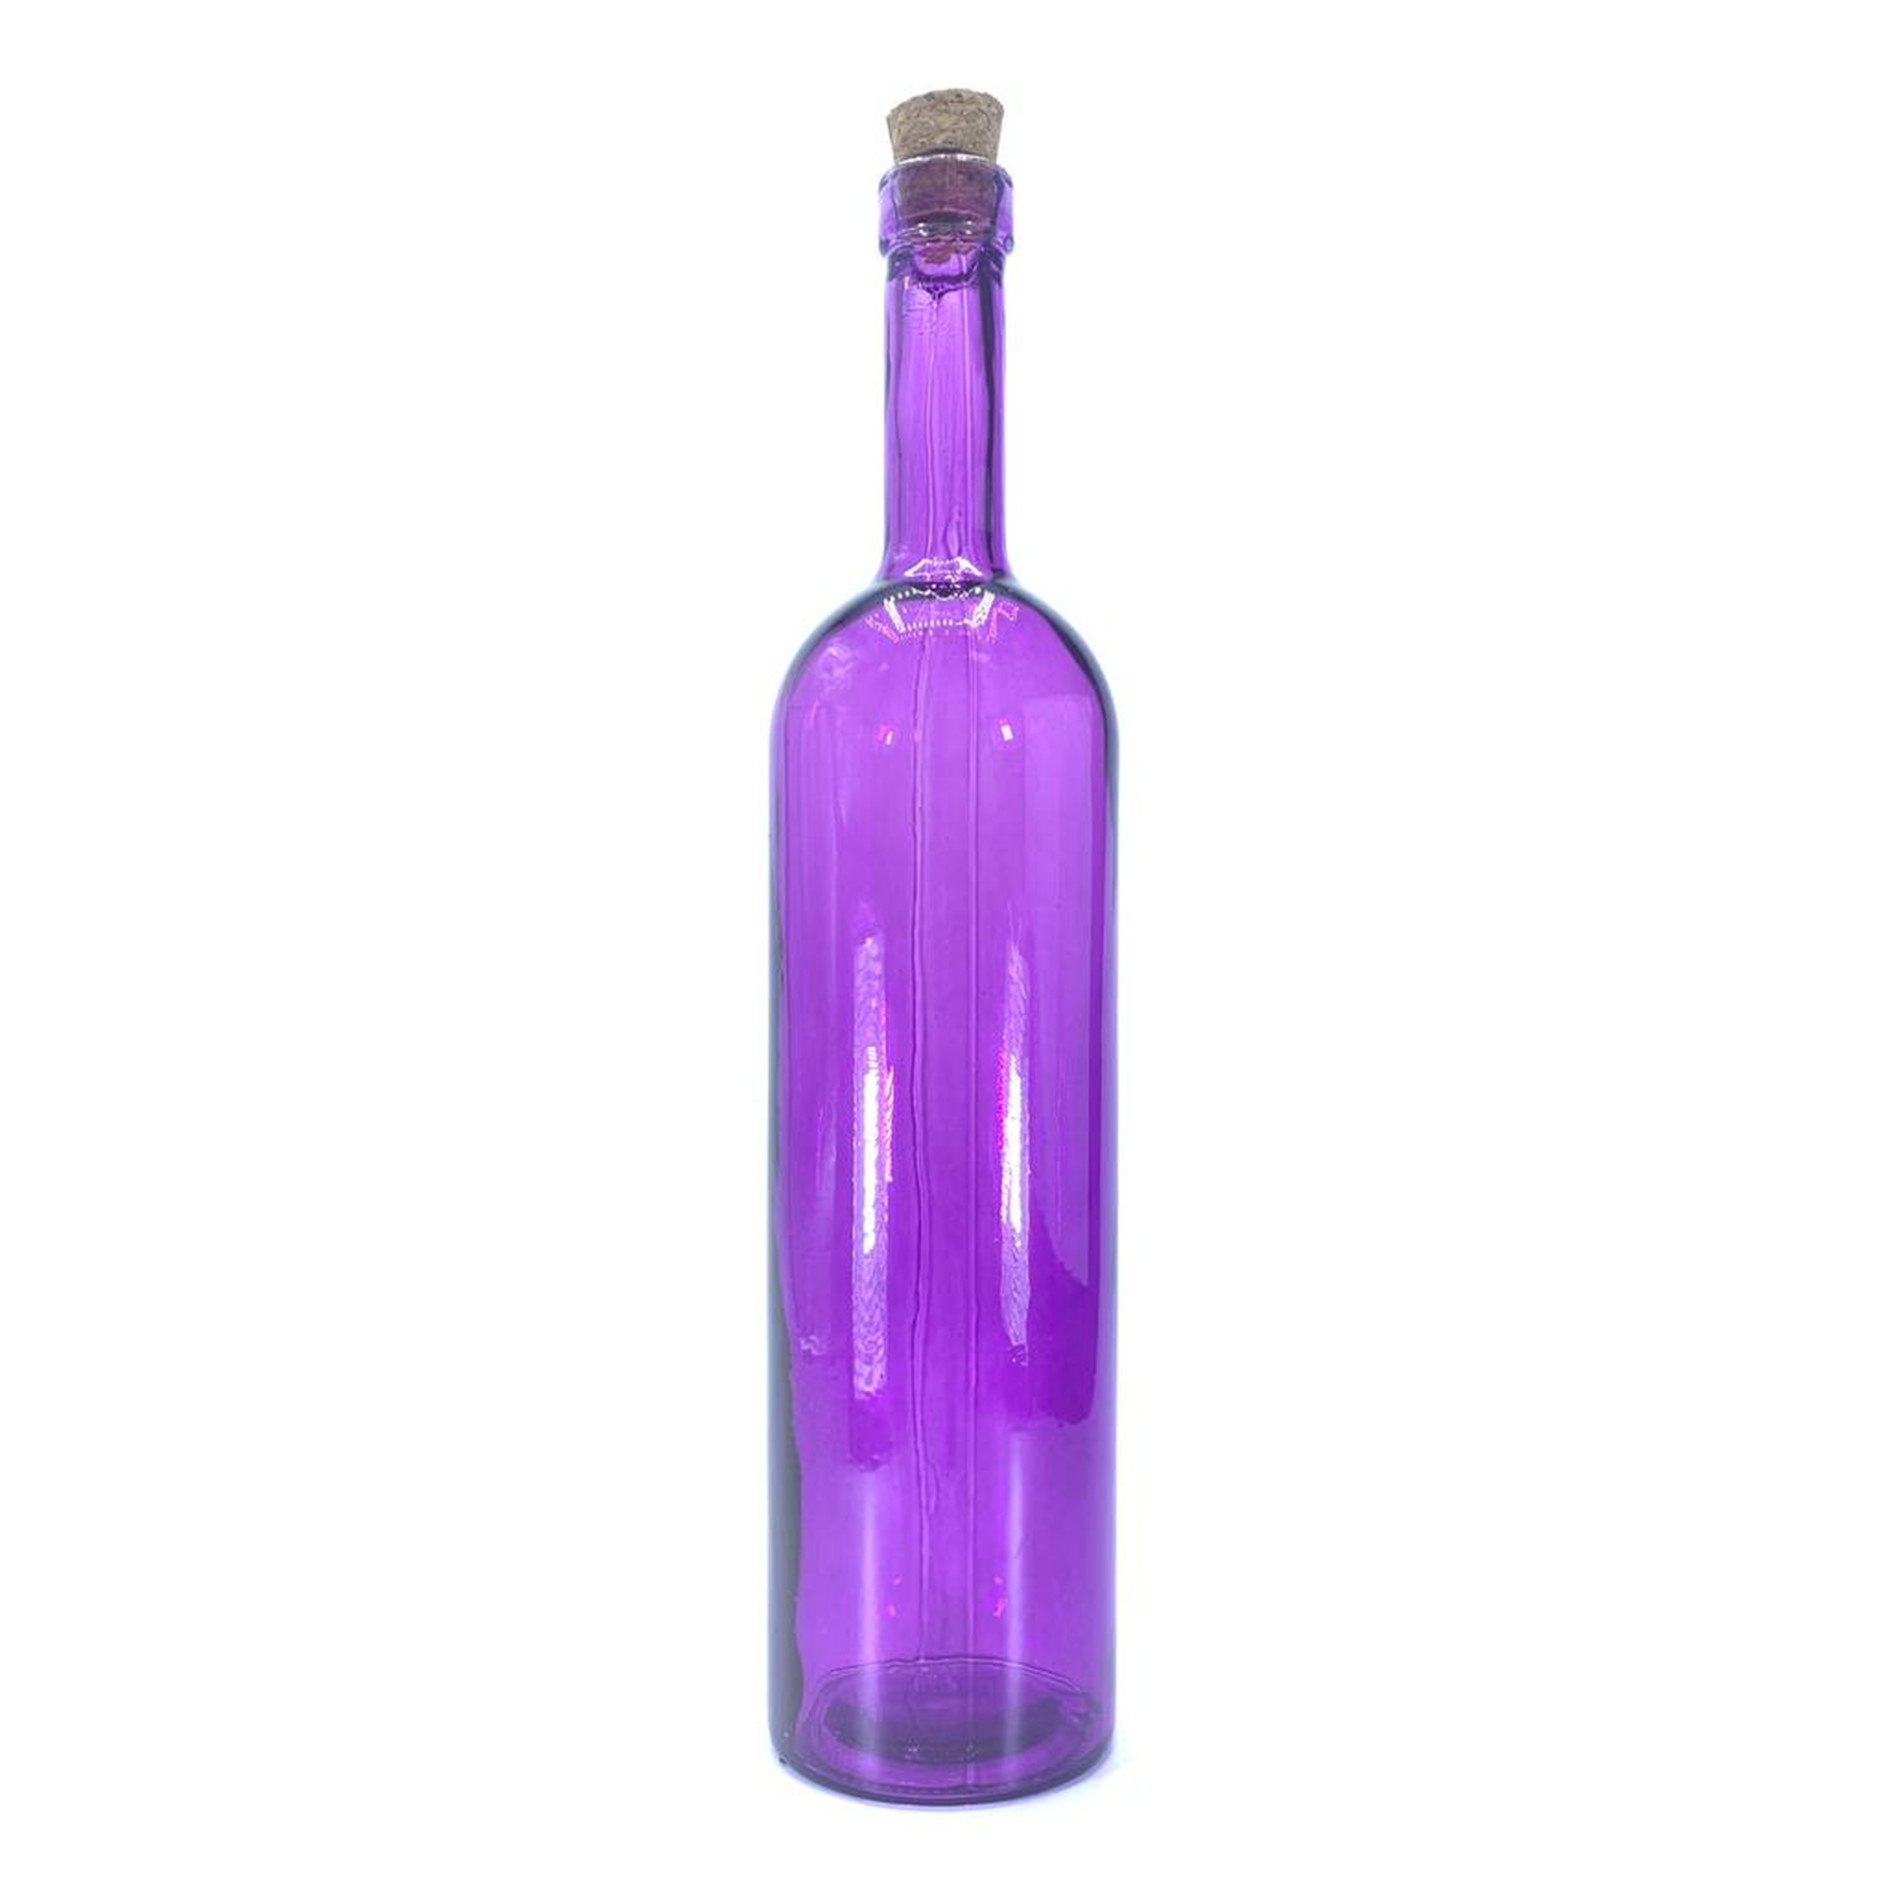 Color pardis bottle